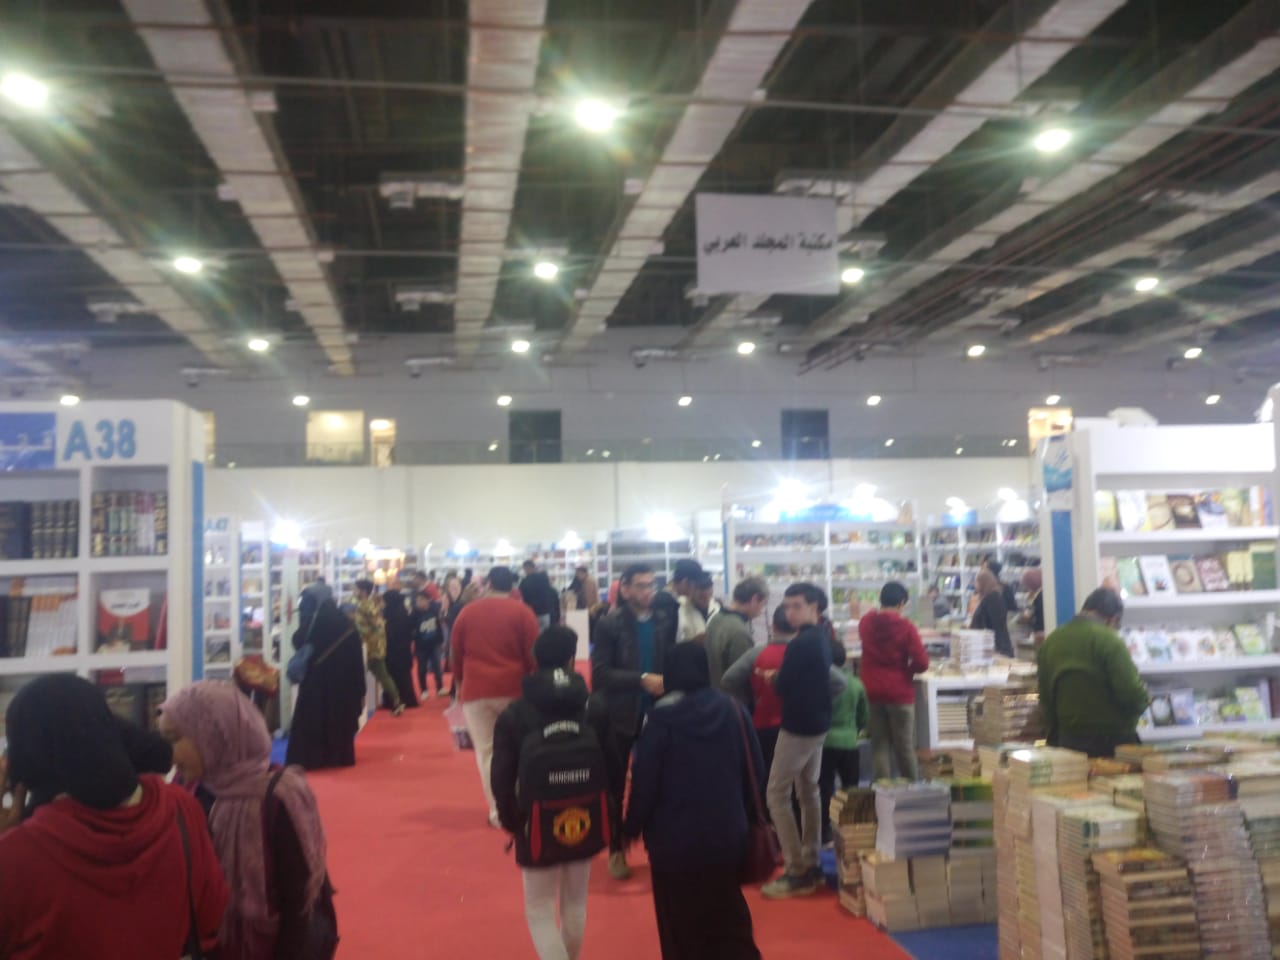 معرض القاهرة للكتاب (2)